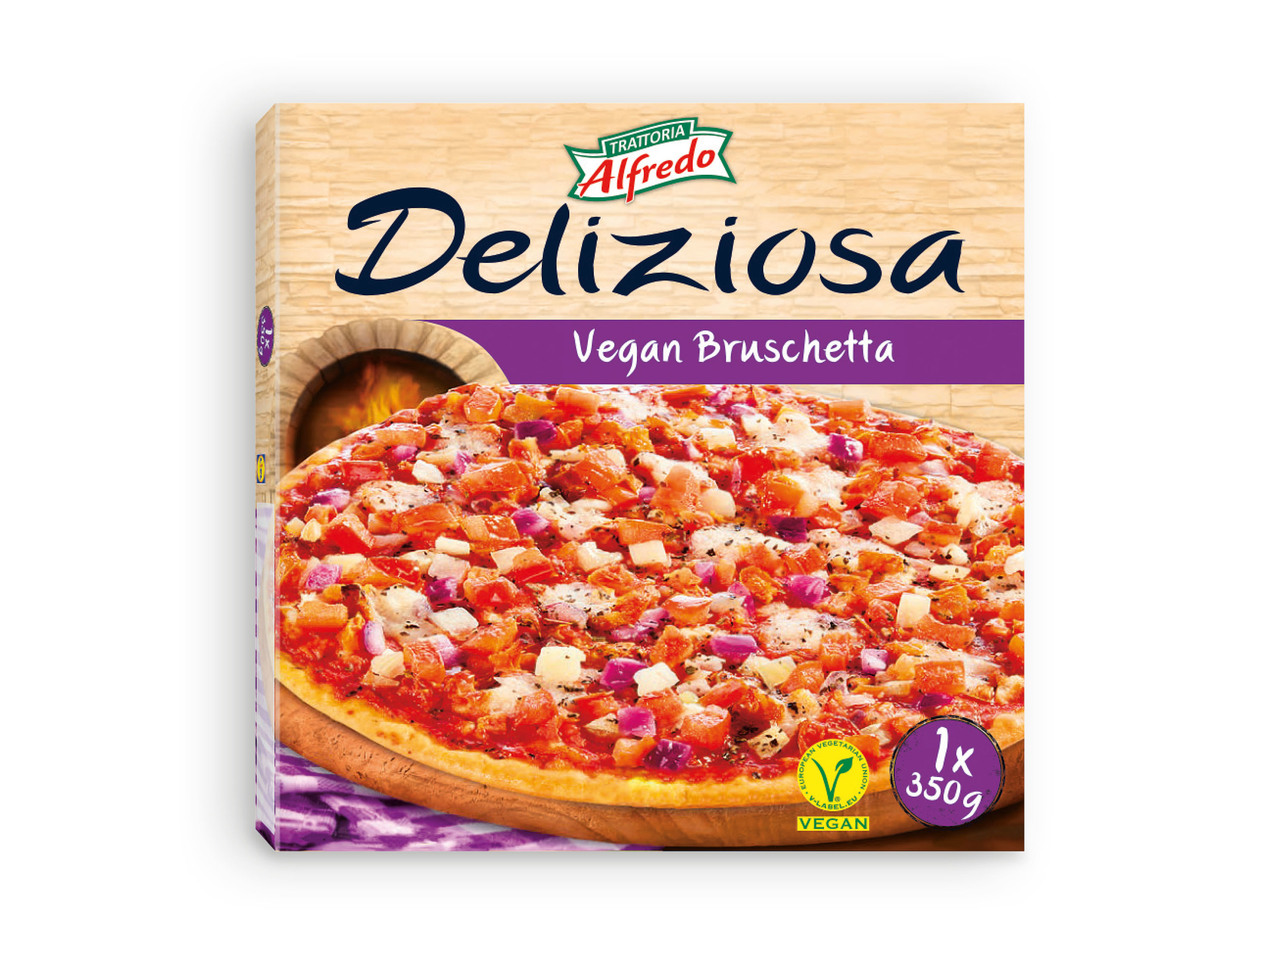 TRATTORIA ALFREDO(R) Pizza Vegan